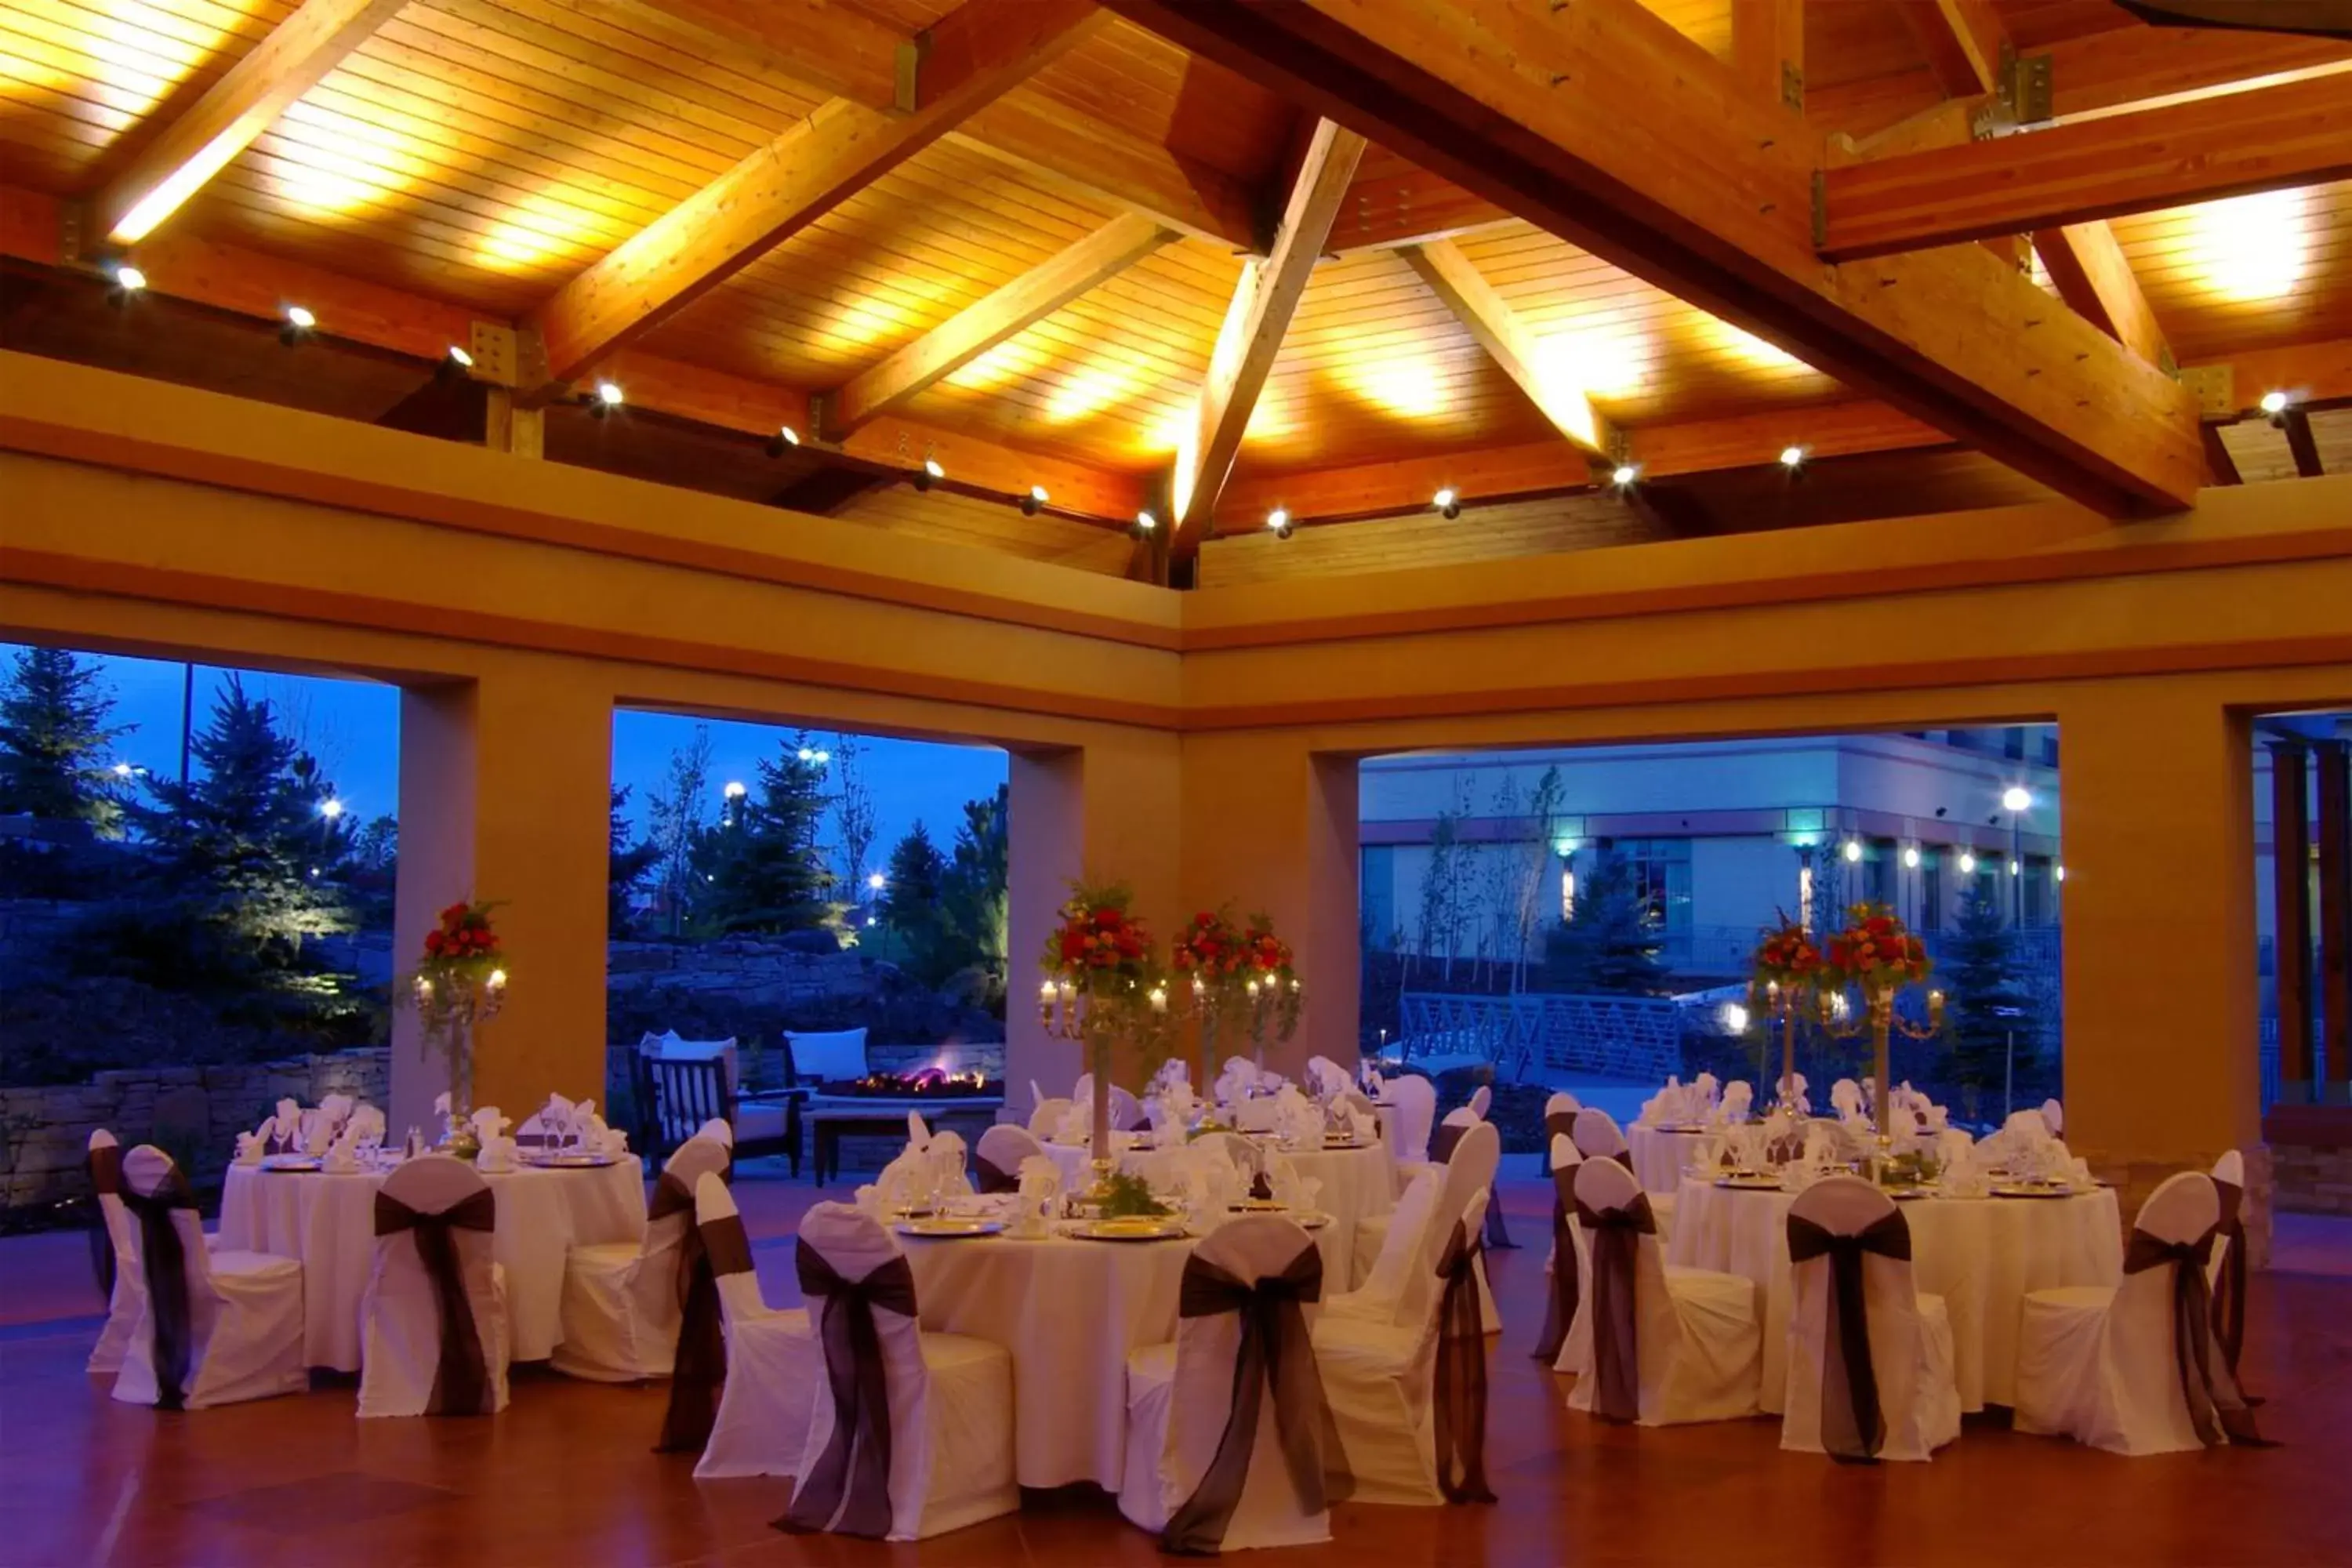 Banquet/Function facilities, Banquet Facilities in Omni Interlocken Hotel